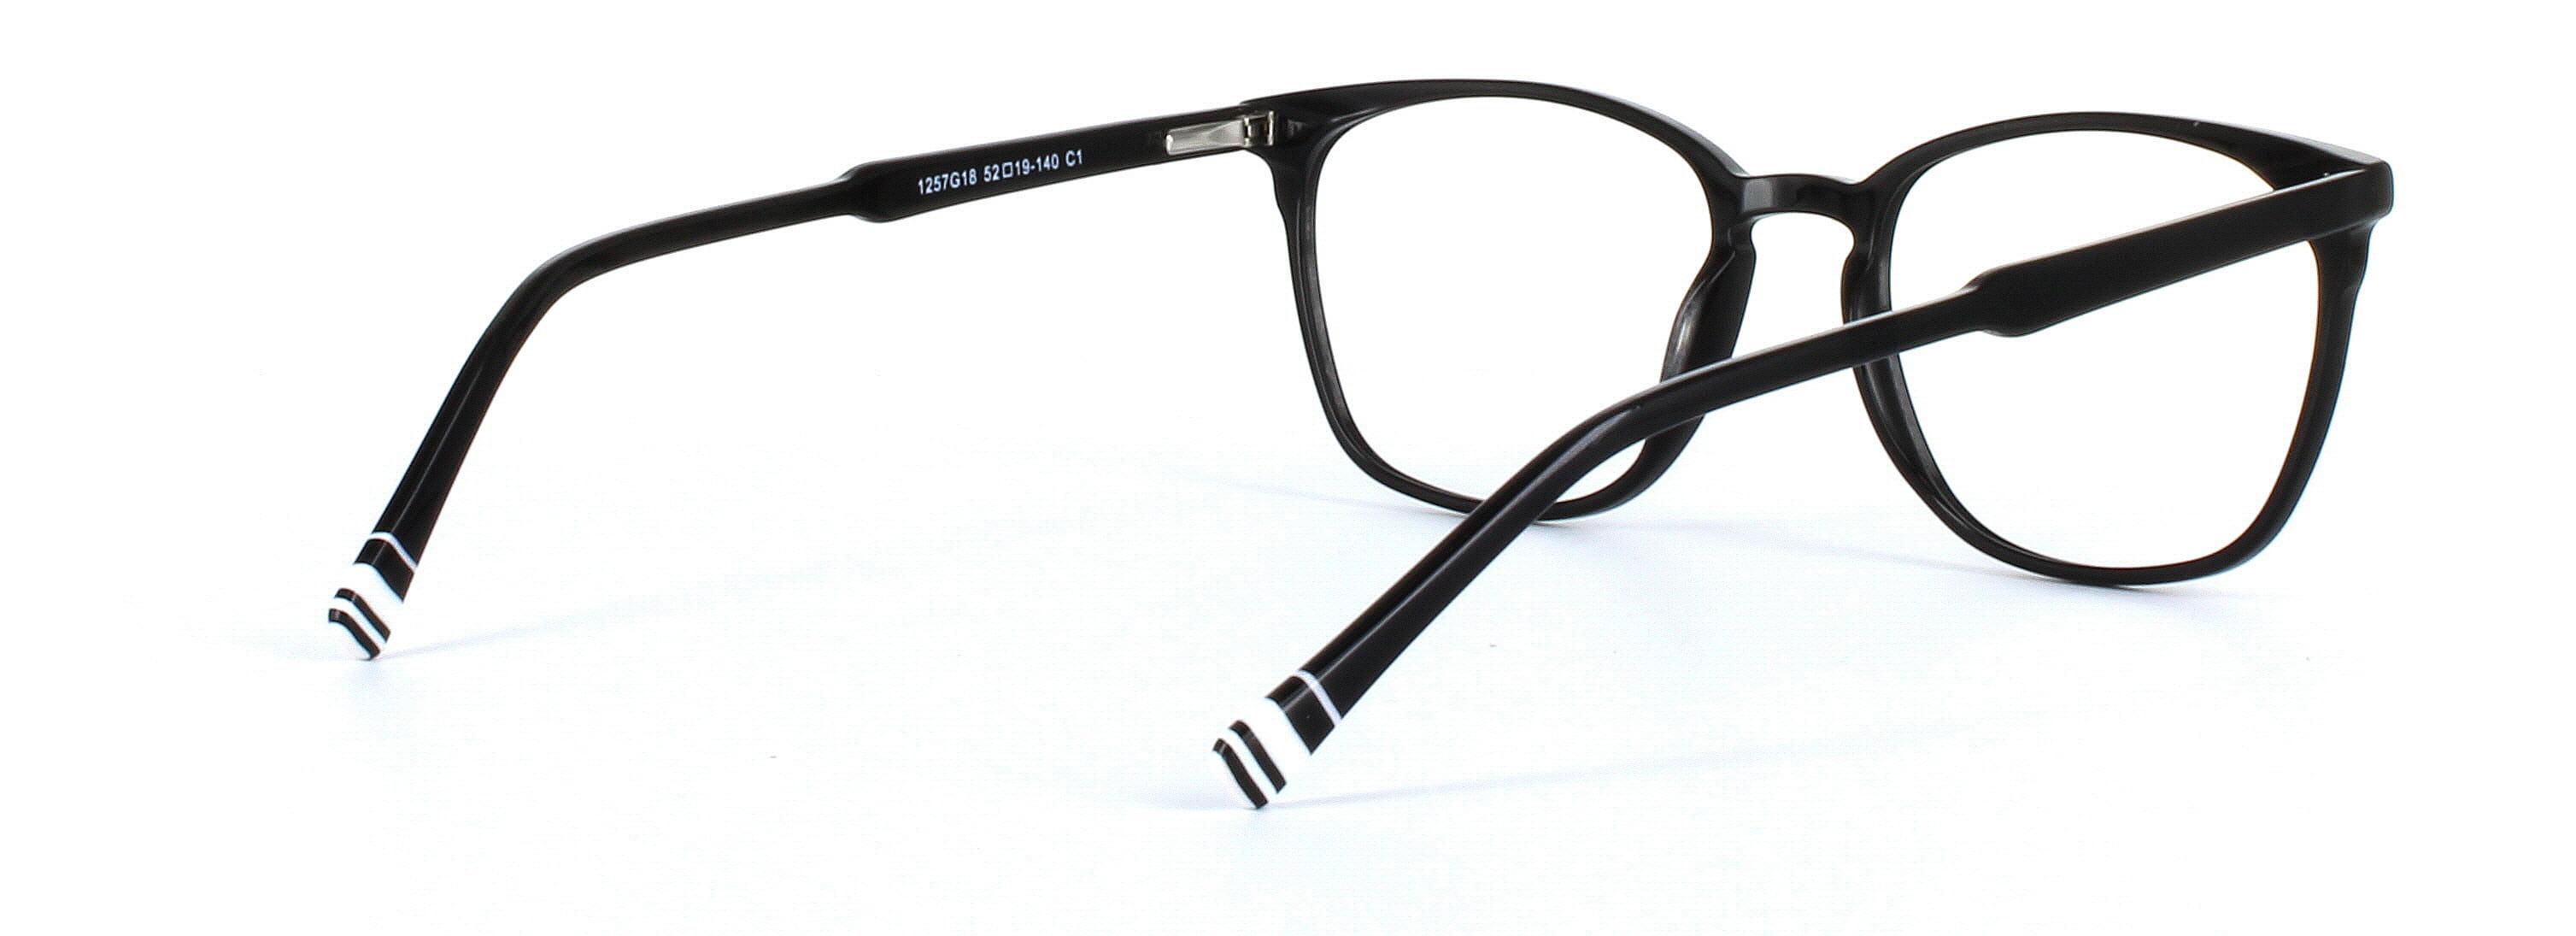 Ladies black acetate glasses - round - image 4